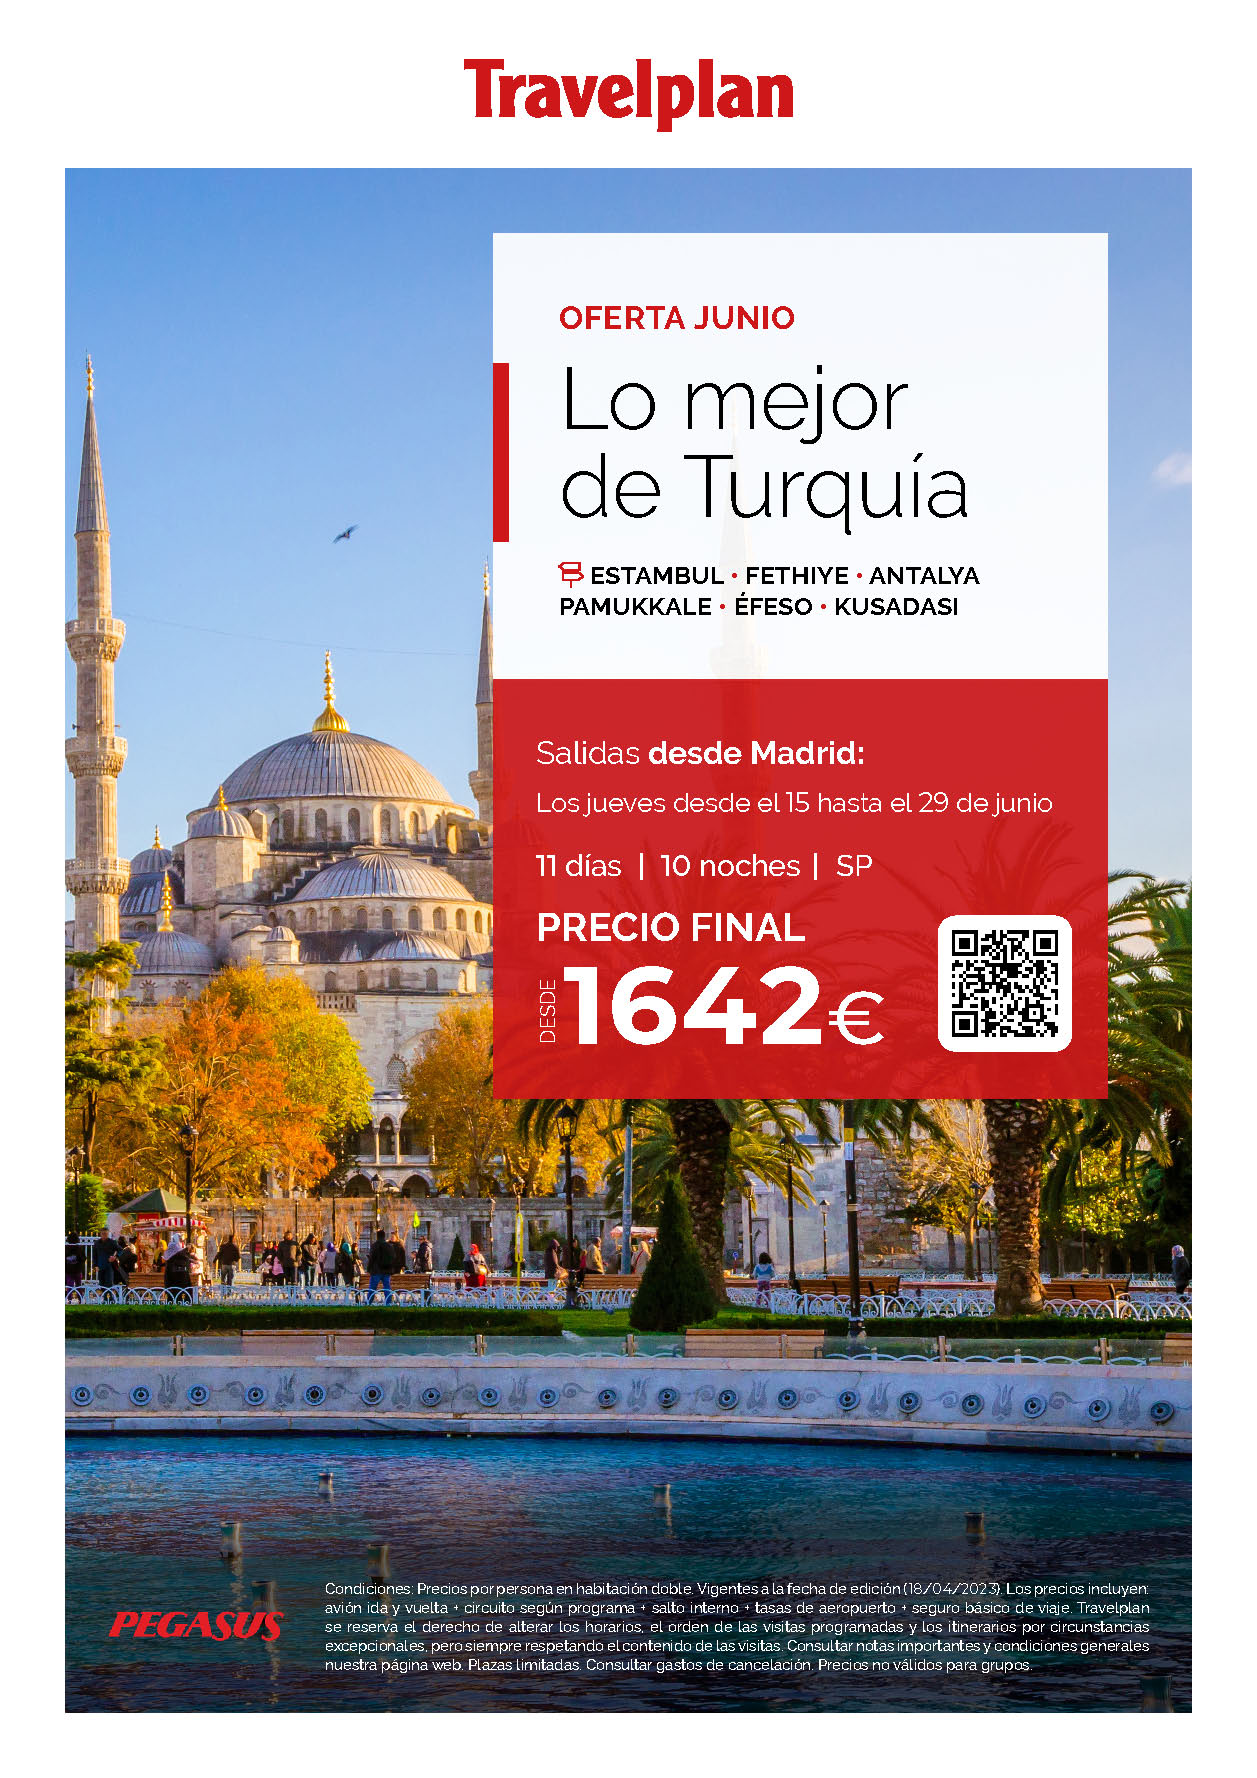 Oferta Travelplan Junio 2023 circuito Lo Mejor de Turquia 11 dias salida en vuelo directo desde Madrid